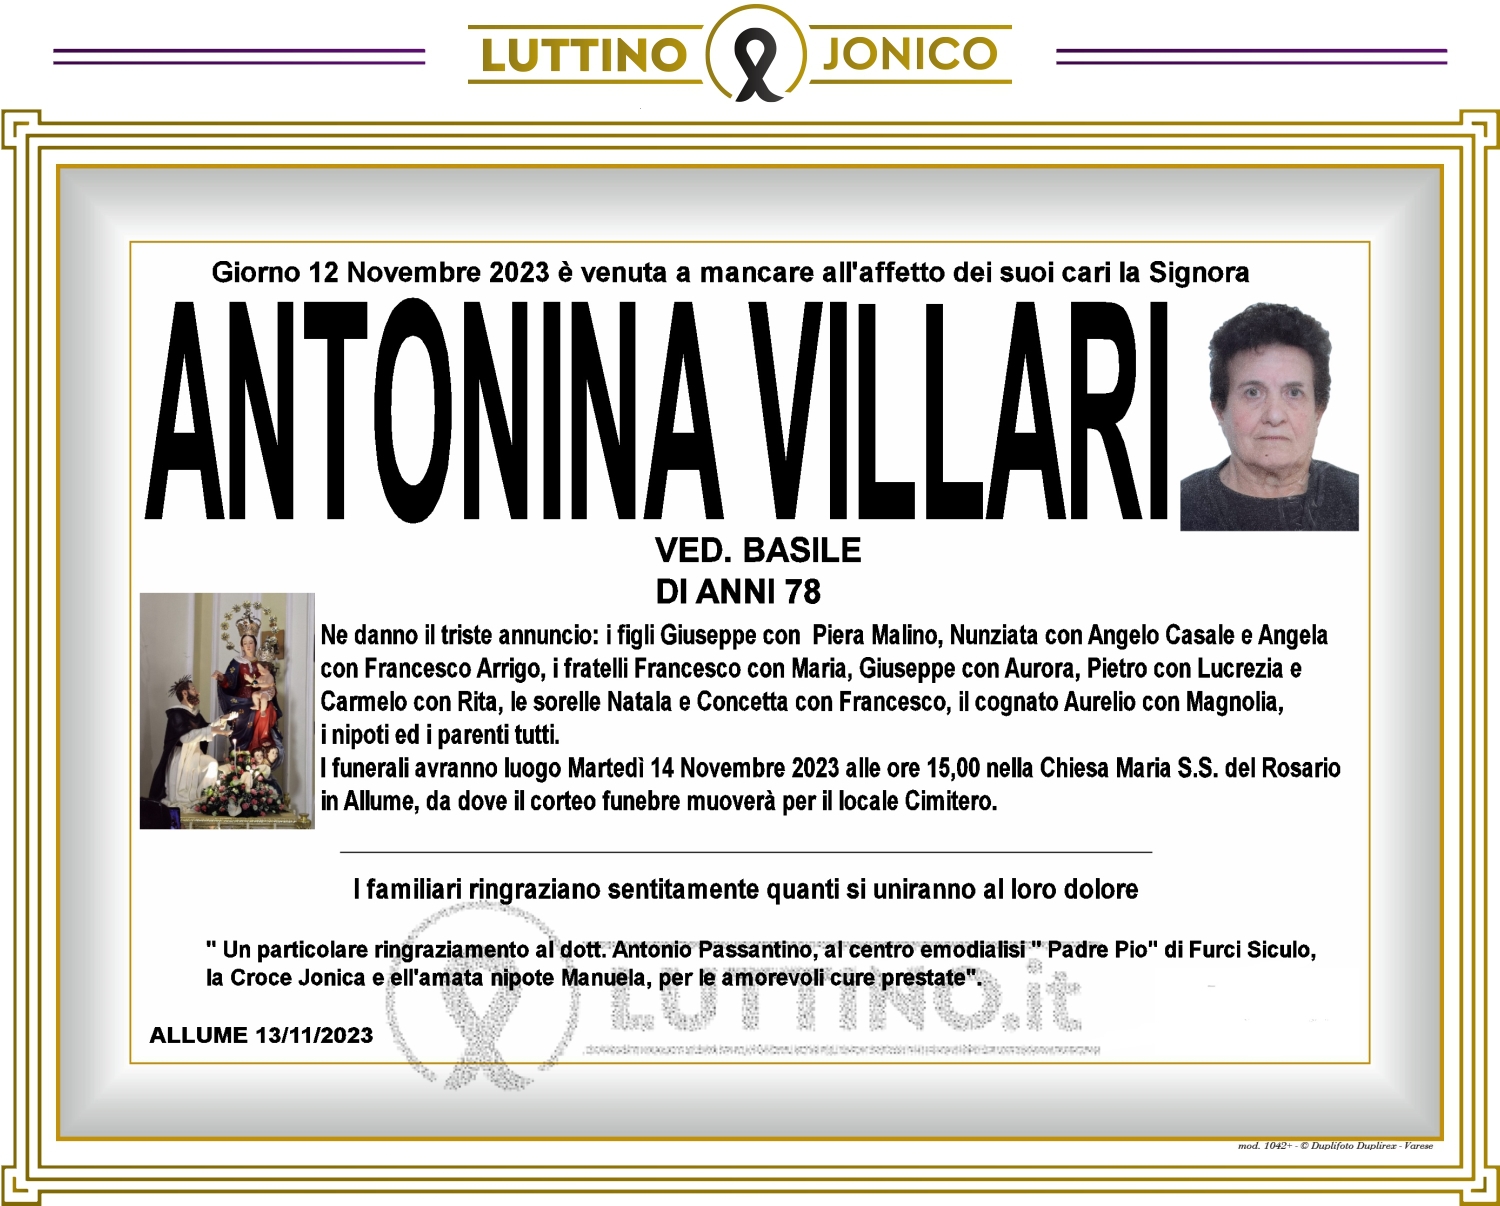 Antonina Villari